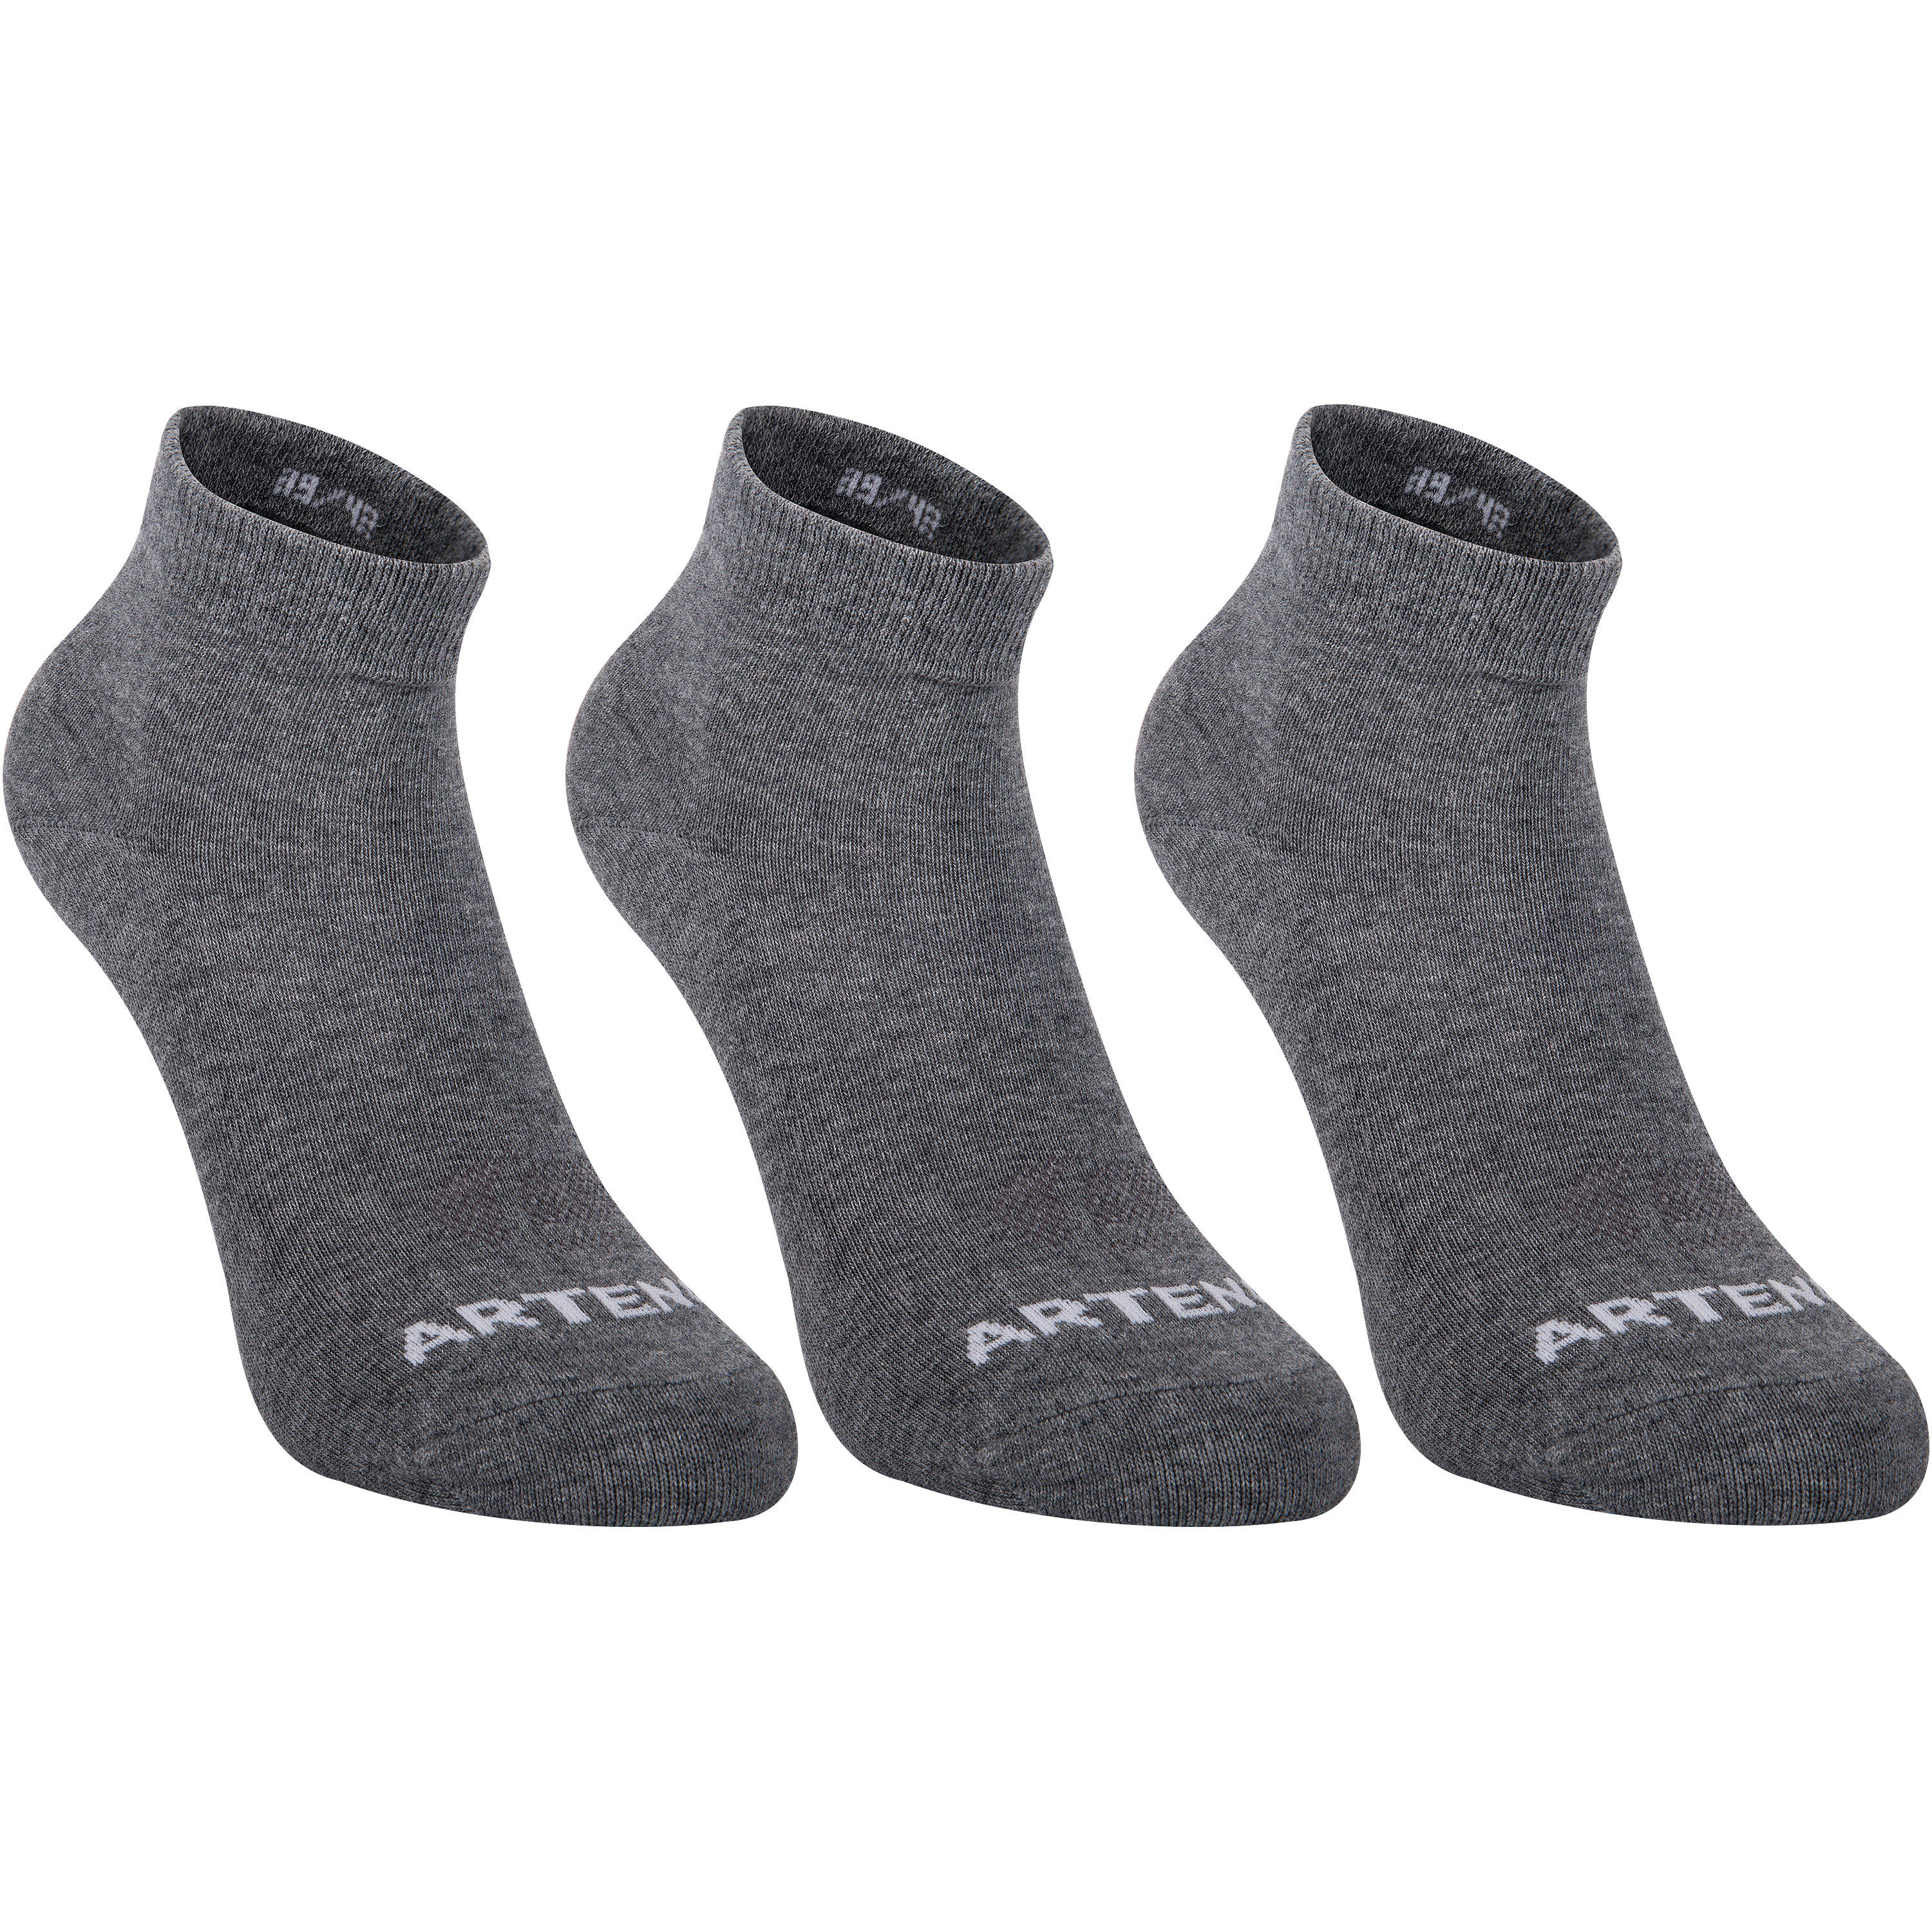 RS 160 Adult Mid Sports Socks Tri-Pack - Dark Grey 1/9